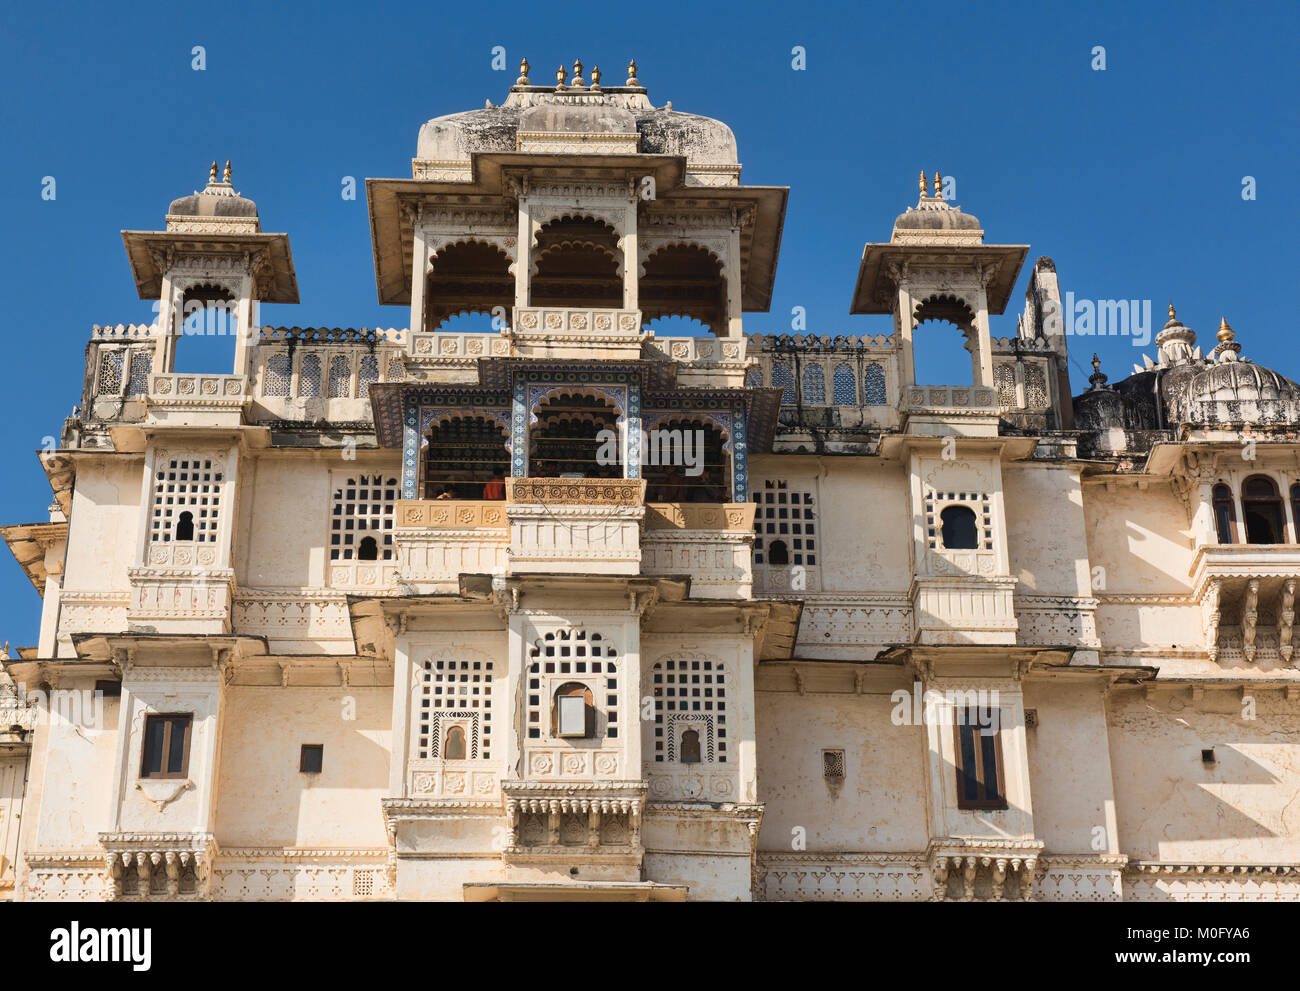 The amazing City Palace, Udaipur, Rajasthan, India Stock Photo